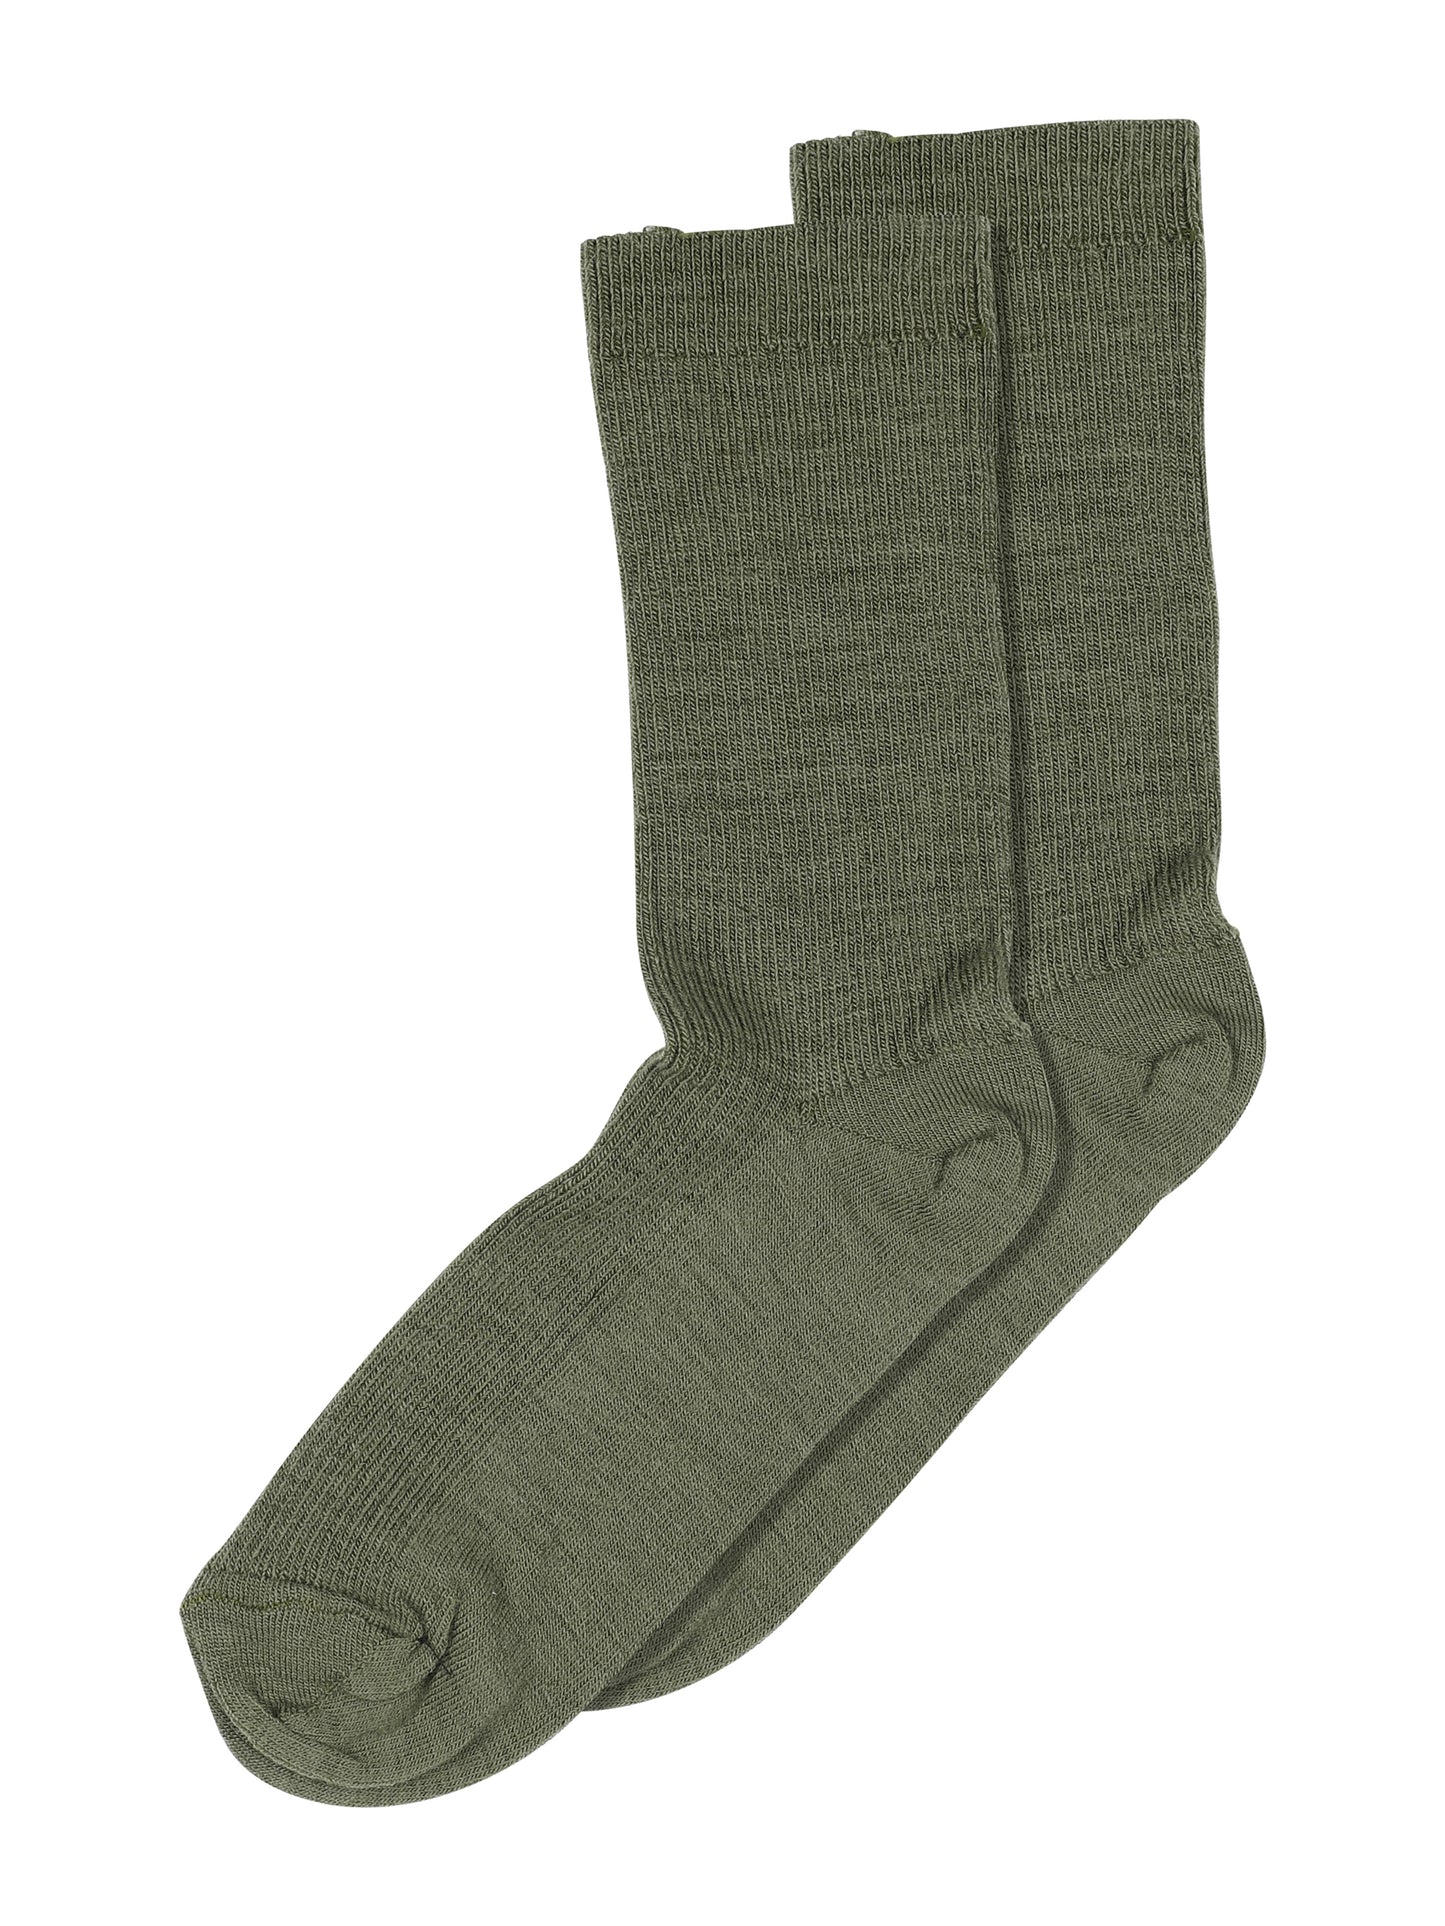 Moss Fine Rib Wool Socks